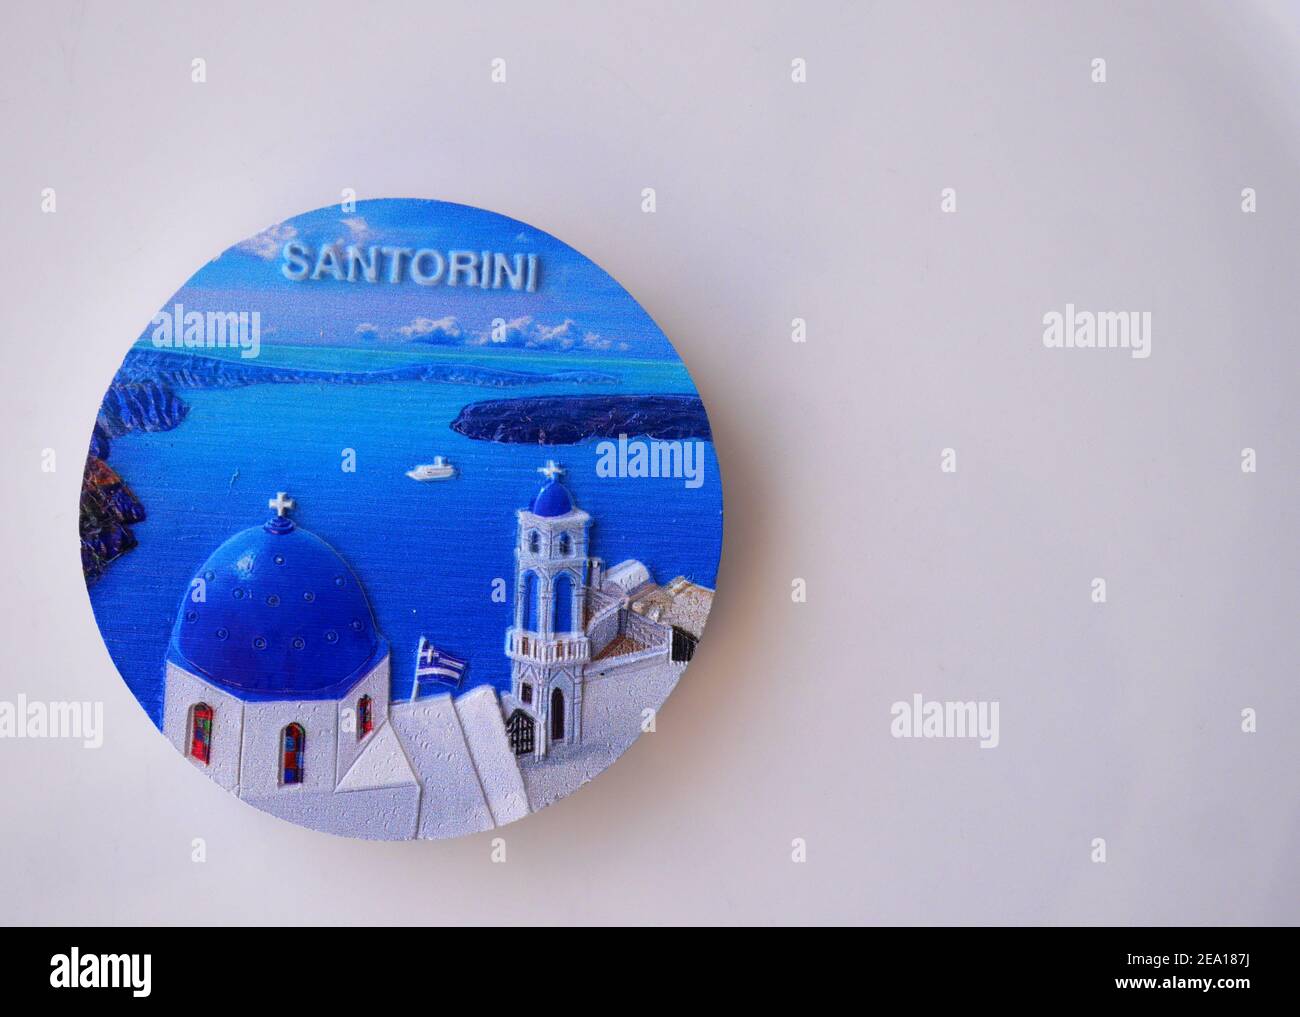 Aimant de réfrigérateur Santorini Greece fridge magnet